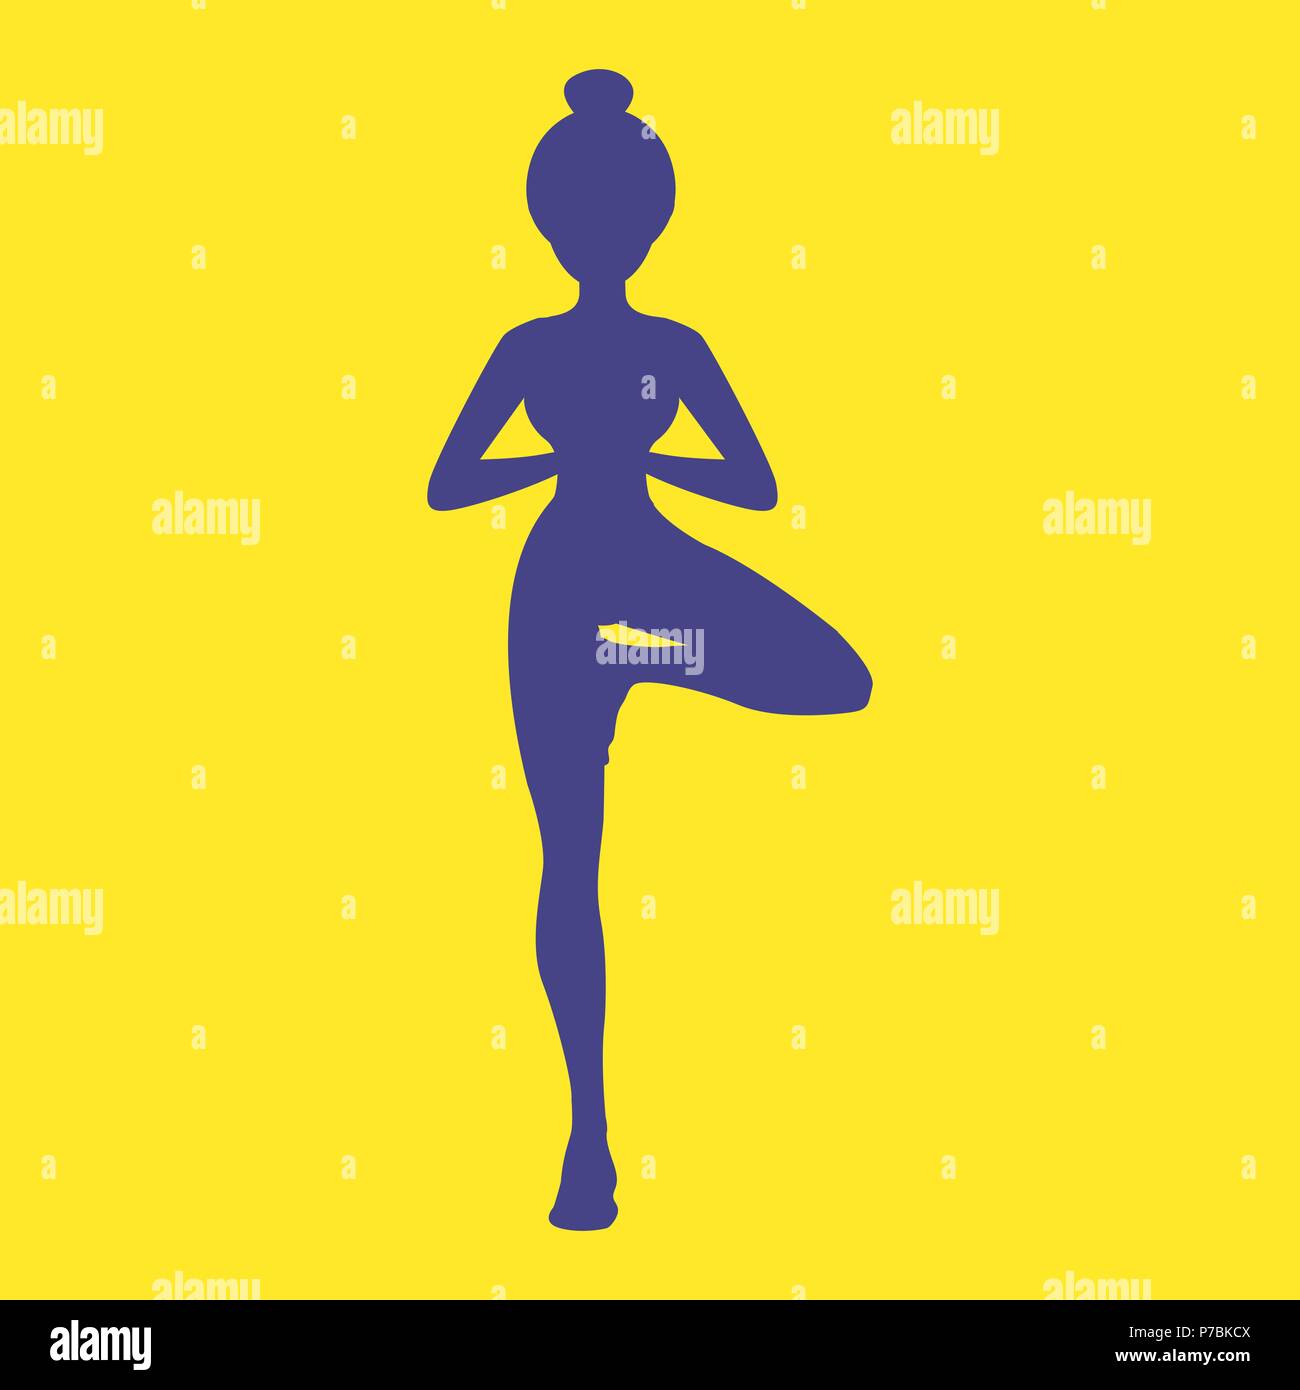 Menschen wichtigsten energetischen Center Symbol mit Body silhouette Yoga Pose gesetzt. EPS 10 Vektor. Stock Vektor